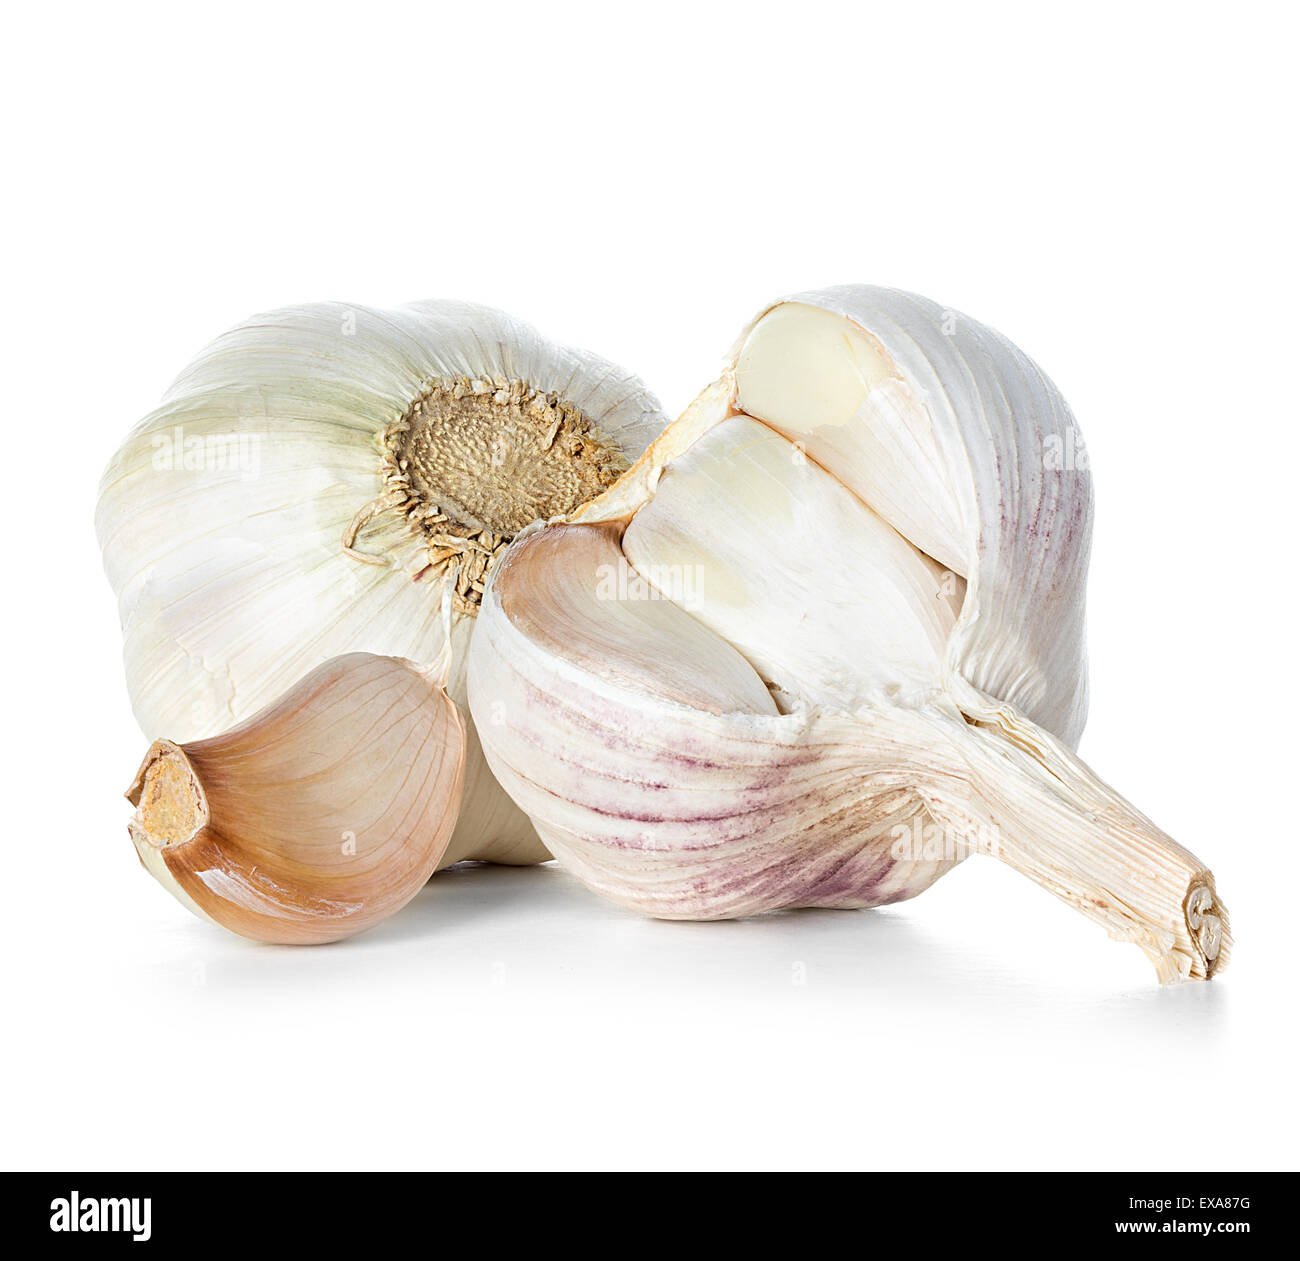 Garlic isolated on white background Stock Photo